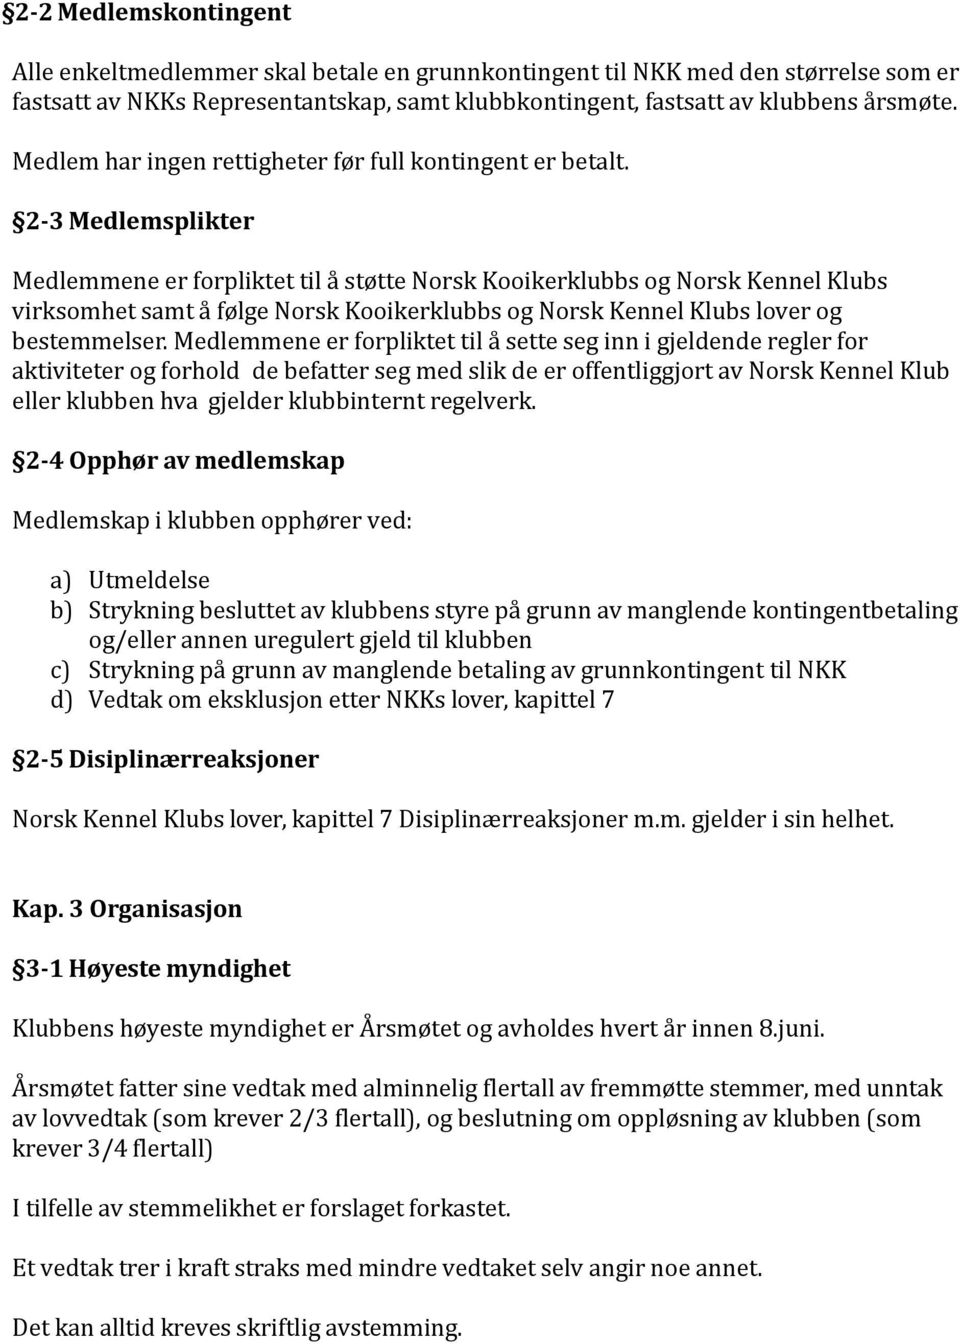 2-3 Medlemsplikter Medlemmene er forpliktet til å støtte Norsk Kooikerklubbs og Norsk Kennel Klubs virksomhet samt å følge Norsk Kooikerklubbs og Norsk Kennel Klubs lover og bestemmelser.